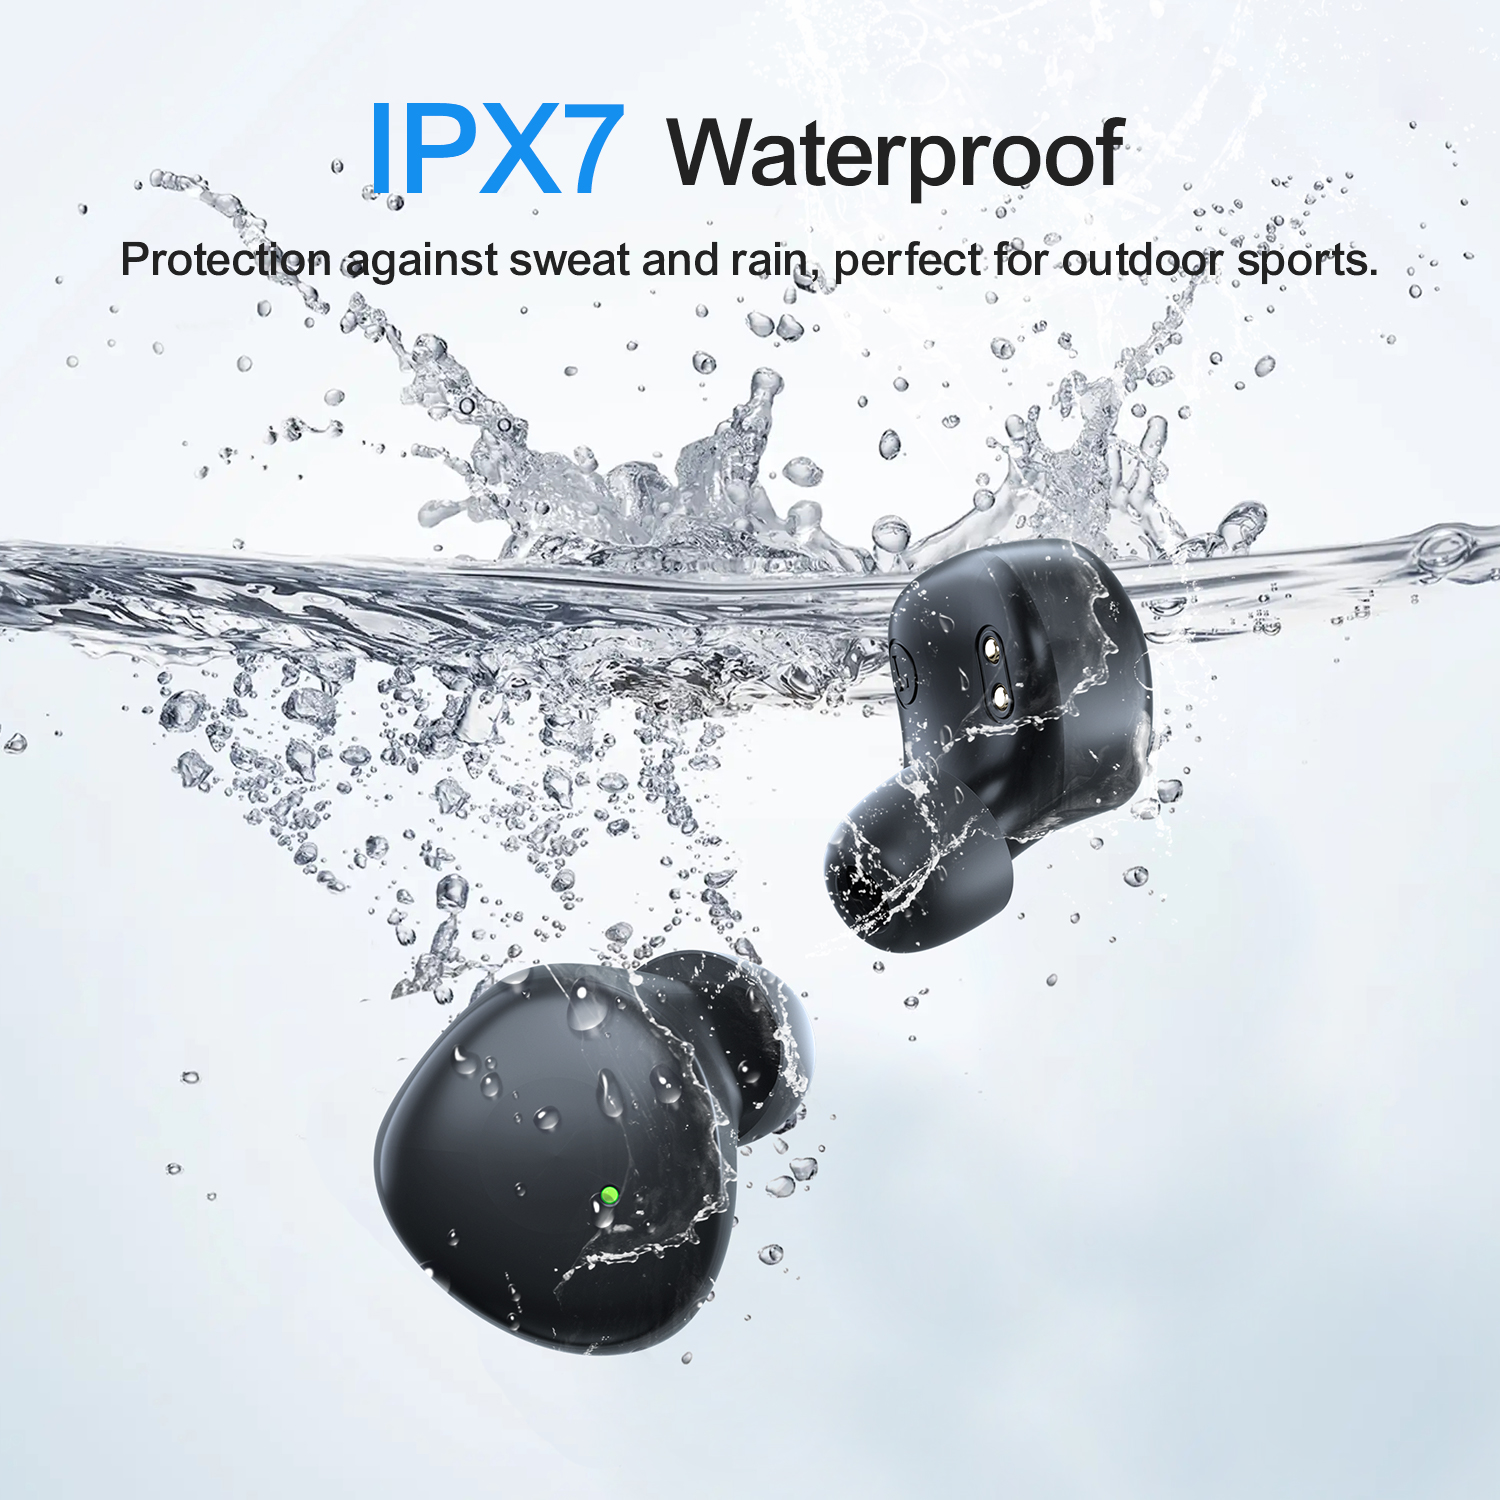 Joyroom JR-TL1 Pro True Wireless Waterproof Earbuds